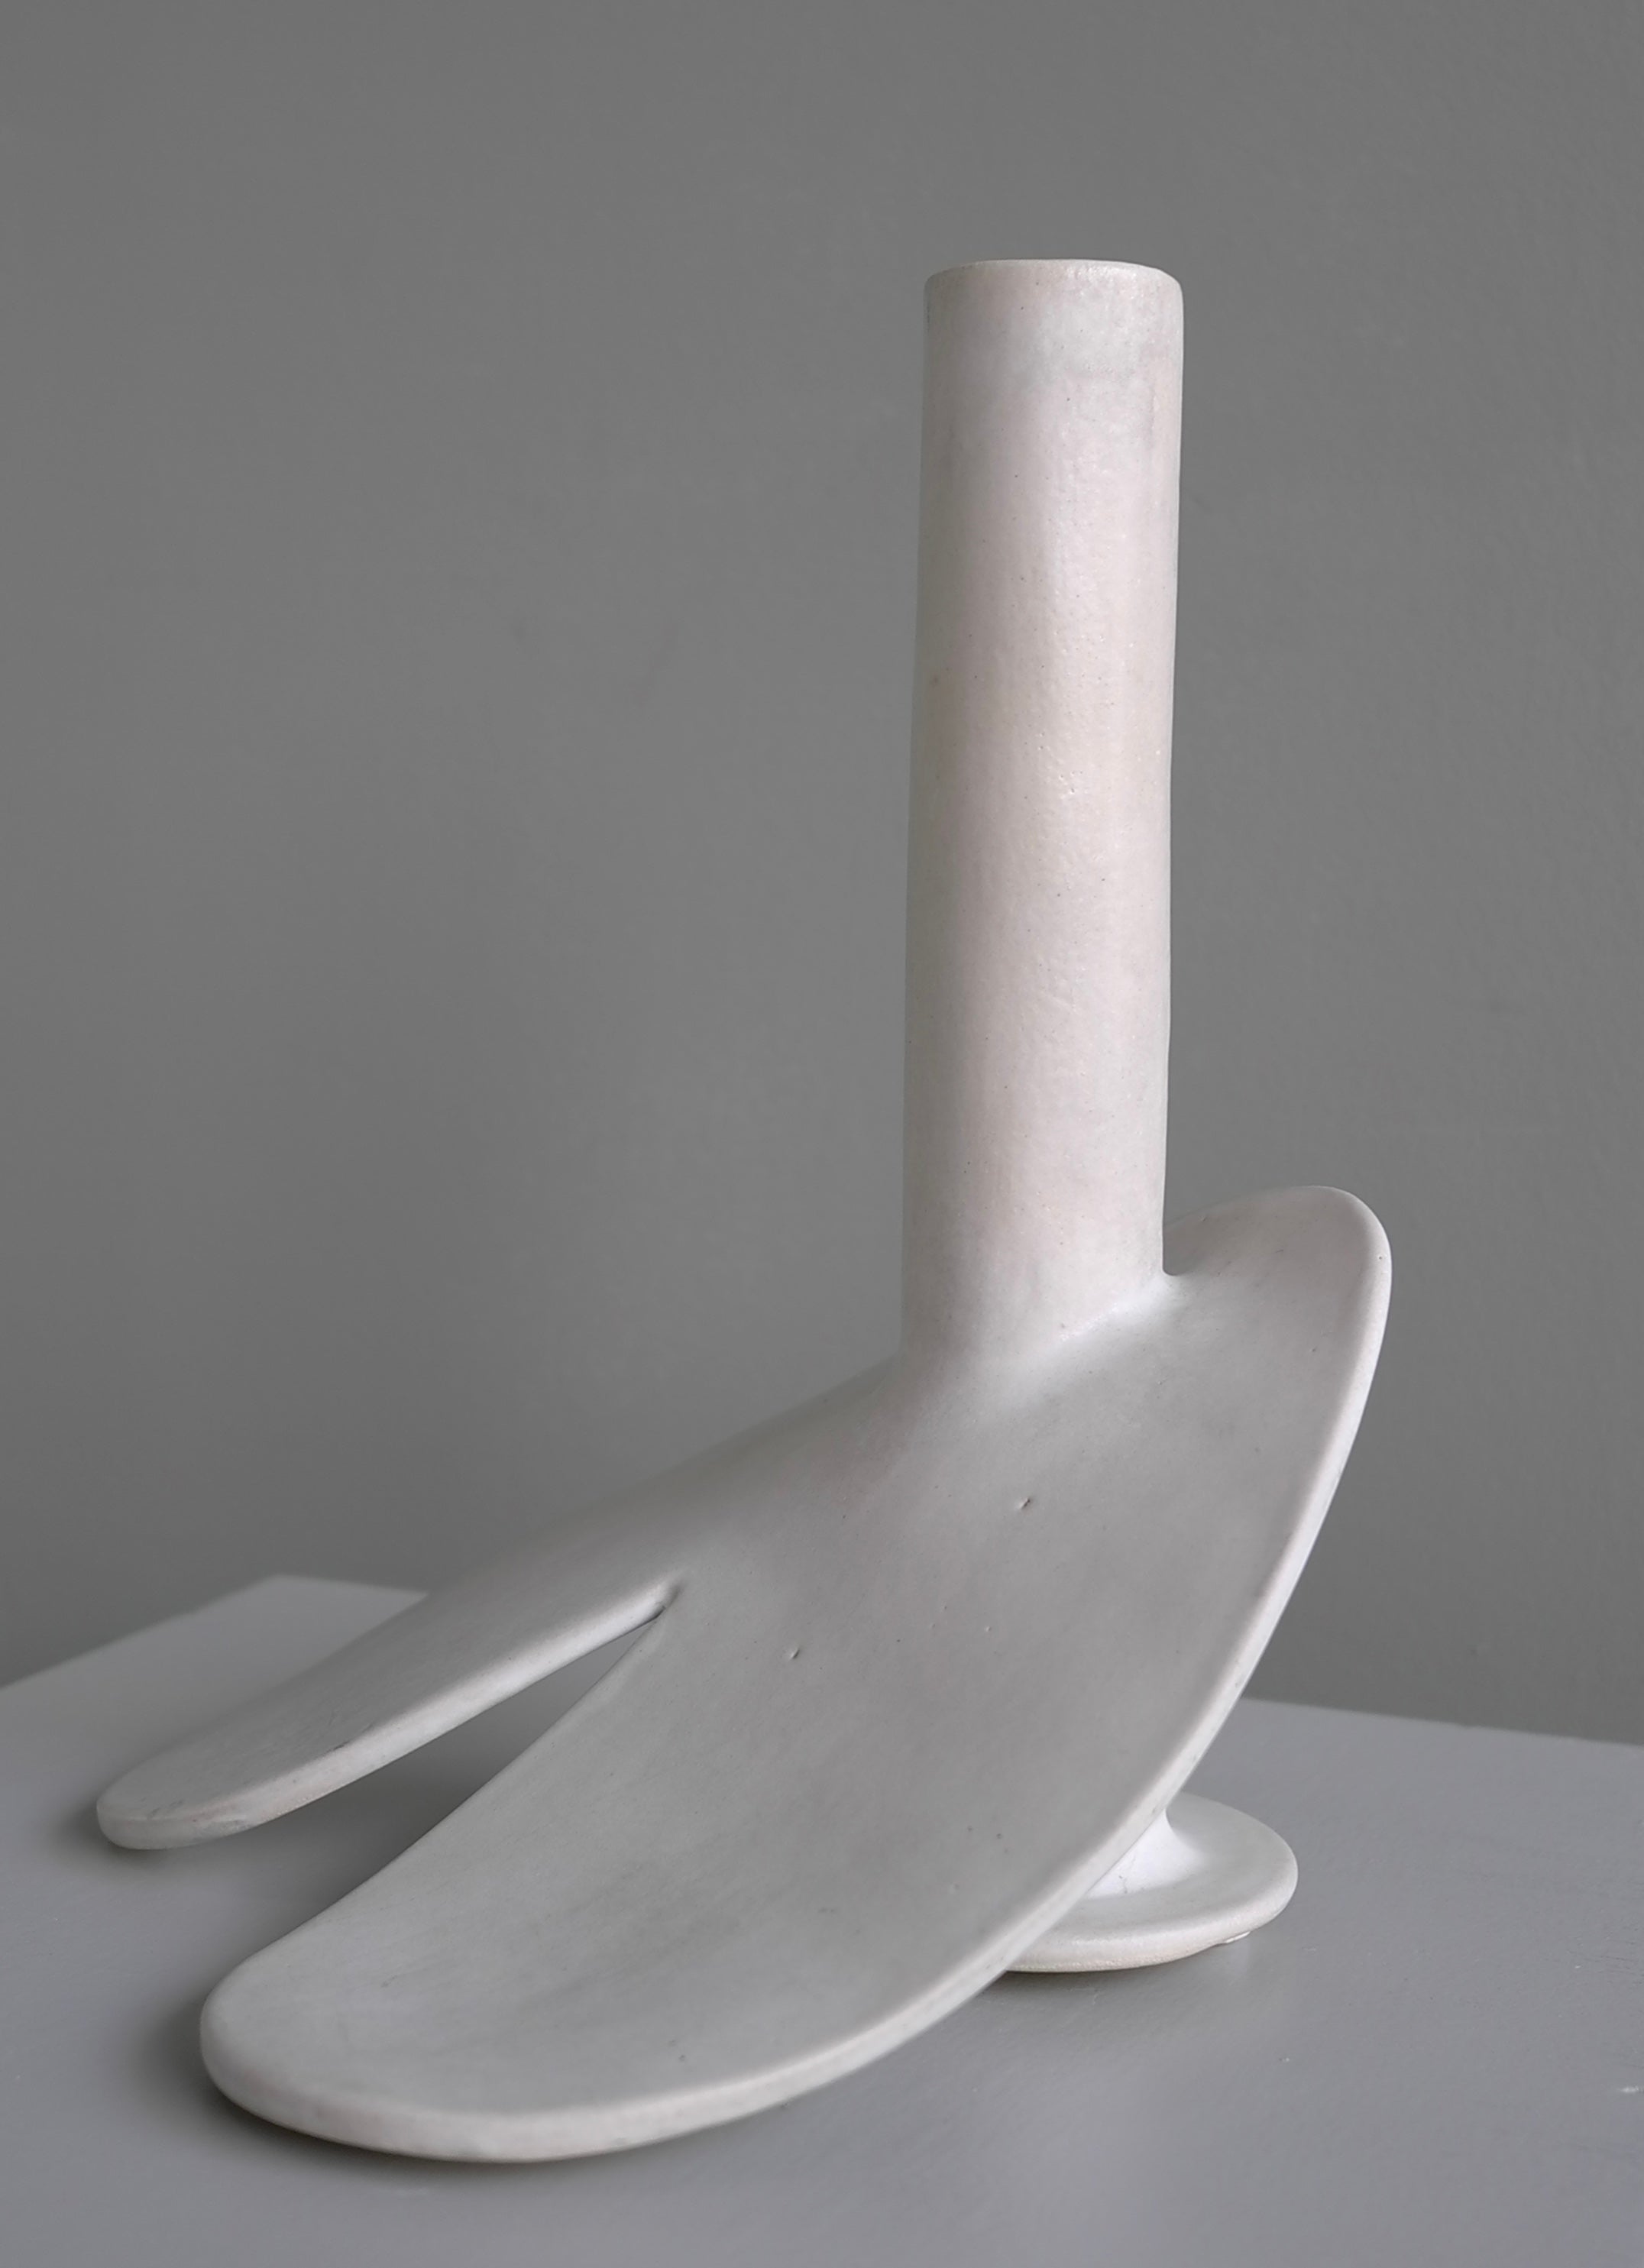 Sculpture abstraite en forme de phallus émaillé blanc, datée et signée par un artiste inconnu, Pays-Bas 1976. 